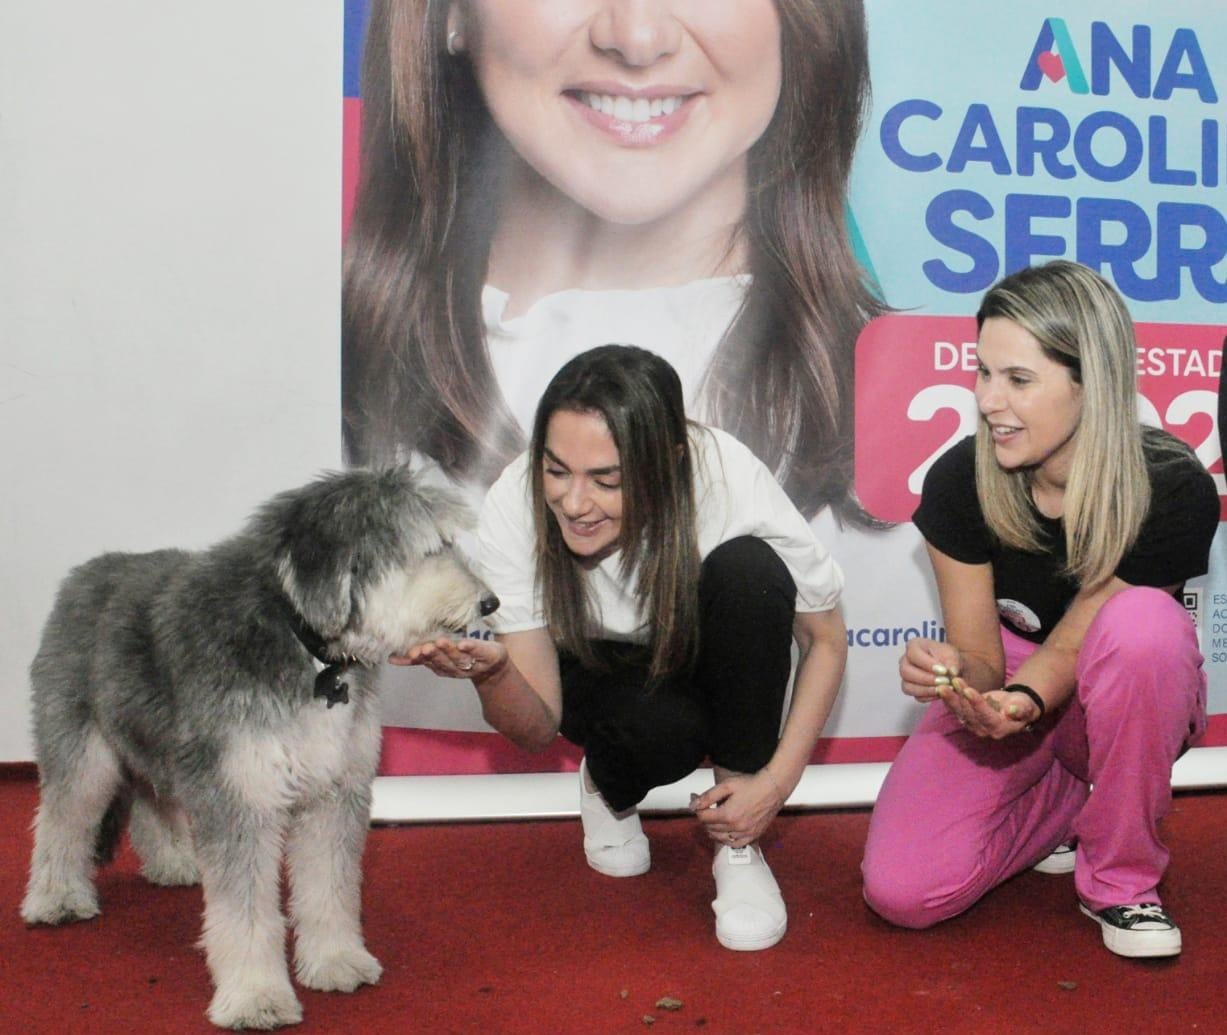 Ana Carolina Serra defende políticas públicas para Pets